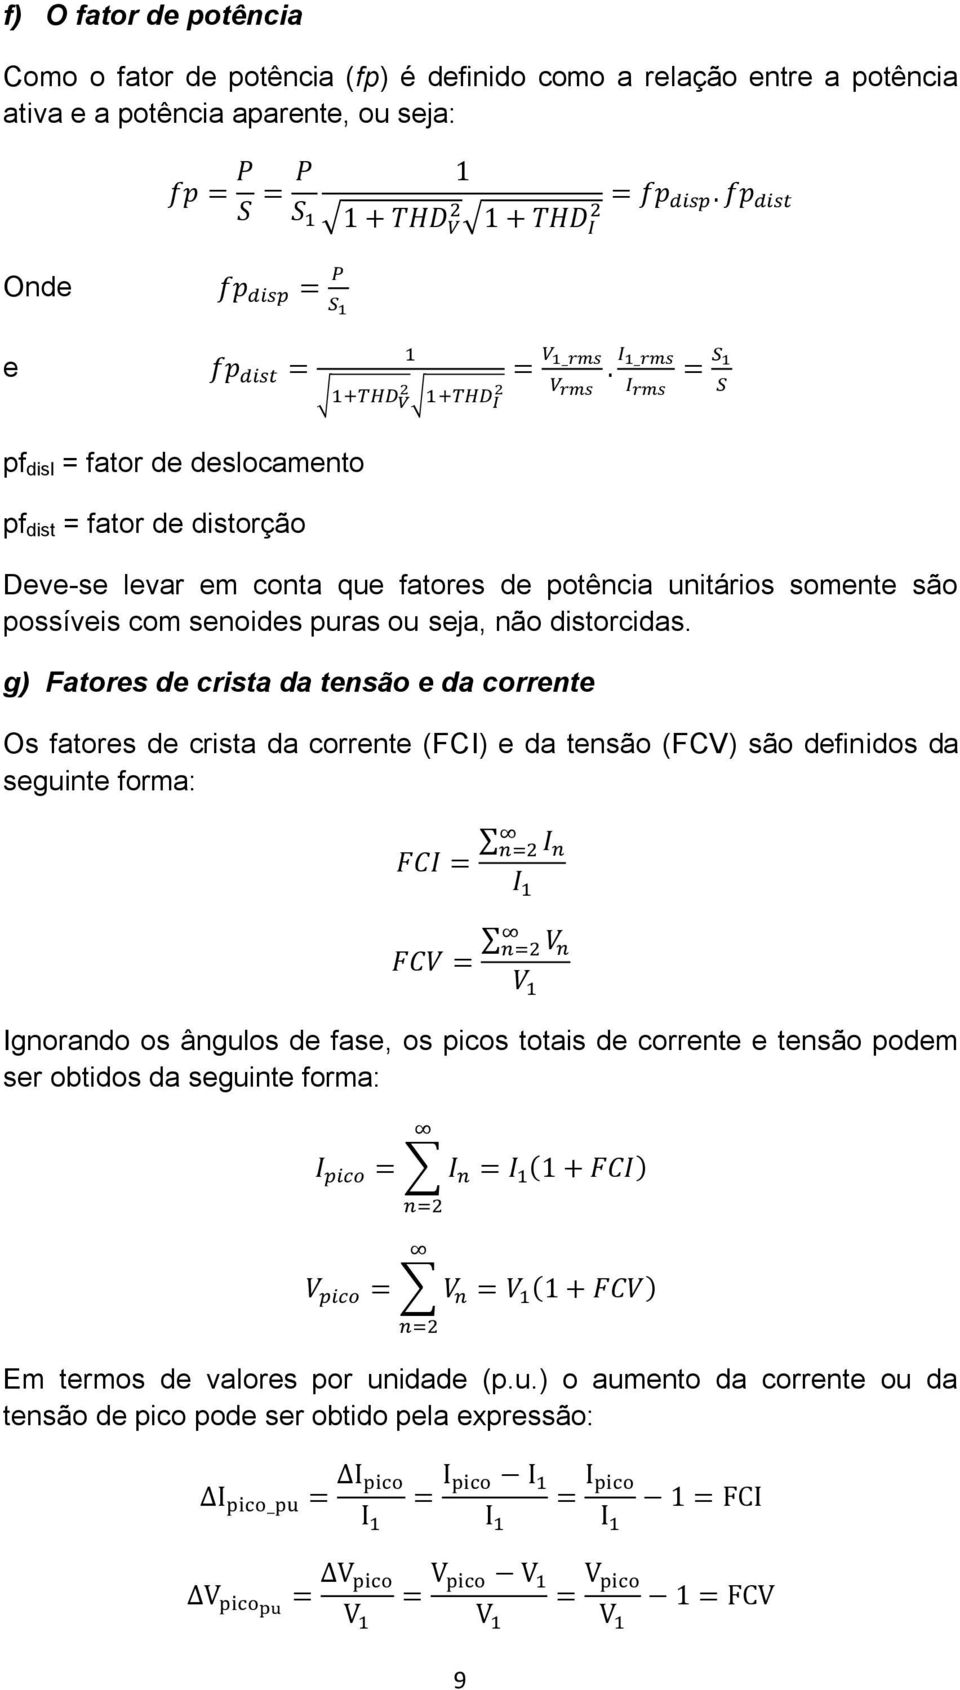 g) Fatores de crista da tensão e da corrente Os fatores de crista da corrente (FCI) e da tensão (FCV) são definidos da seguinte forma: Ignorando os ângulos de fase, os